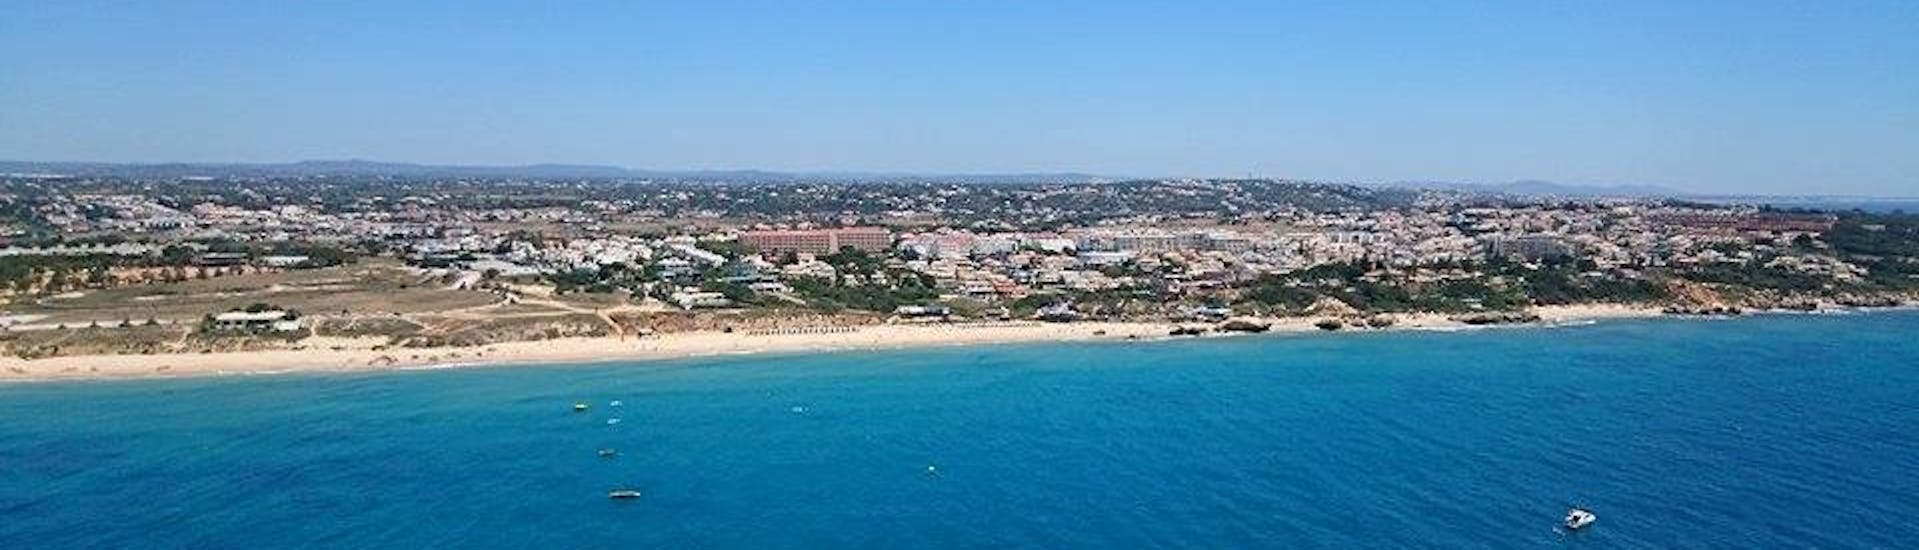 La costa del Algarve y la playa de Albufeira desde el cielo que los participantes pueden disfrutar durante el Kayak de Mar en la Playa de Galé en Albufeira con Nautifun Galé.